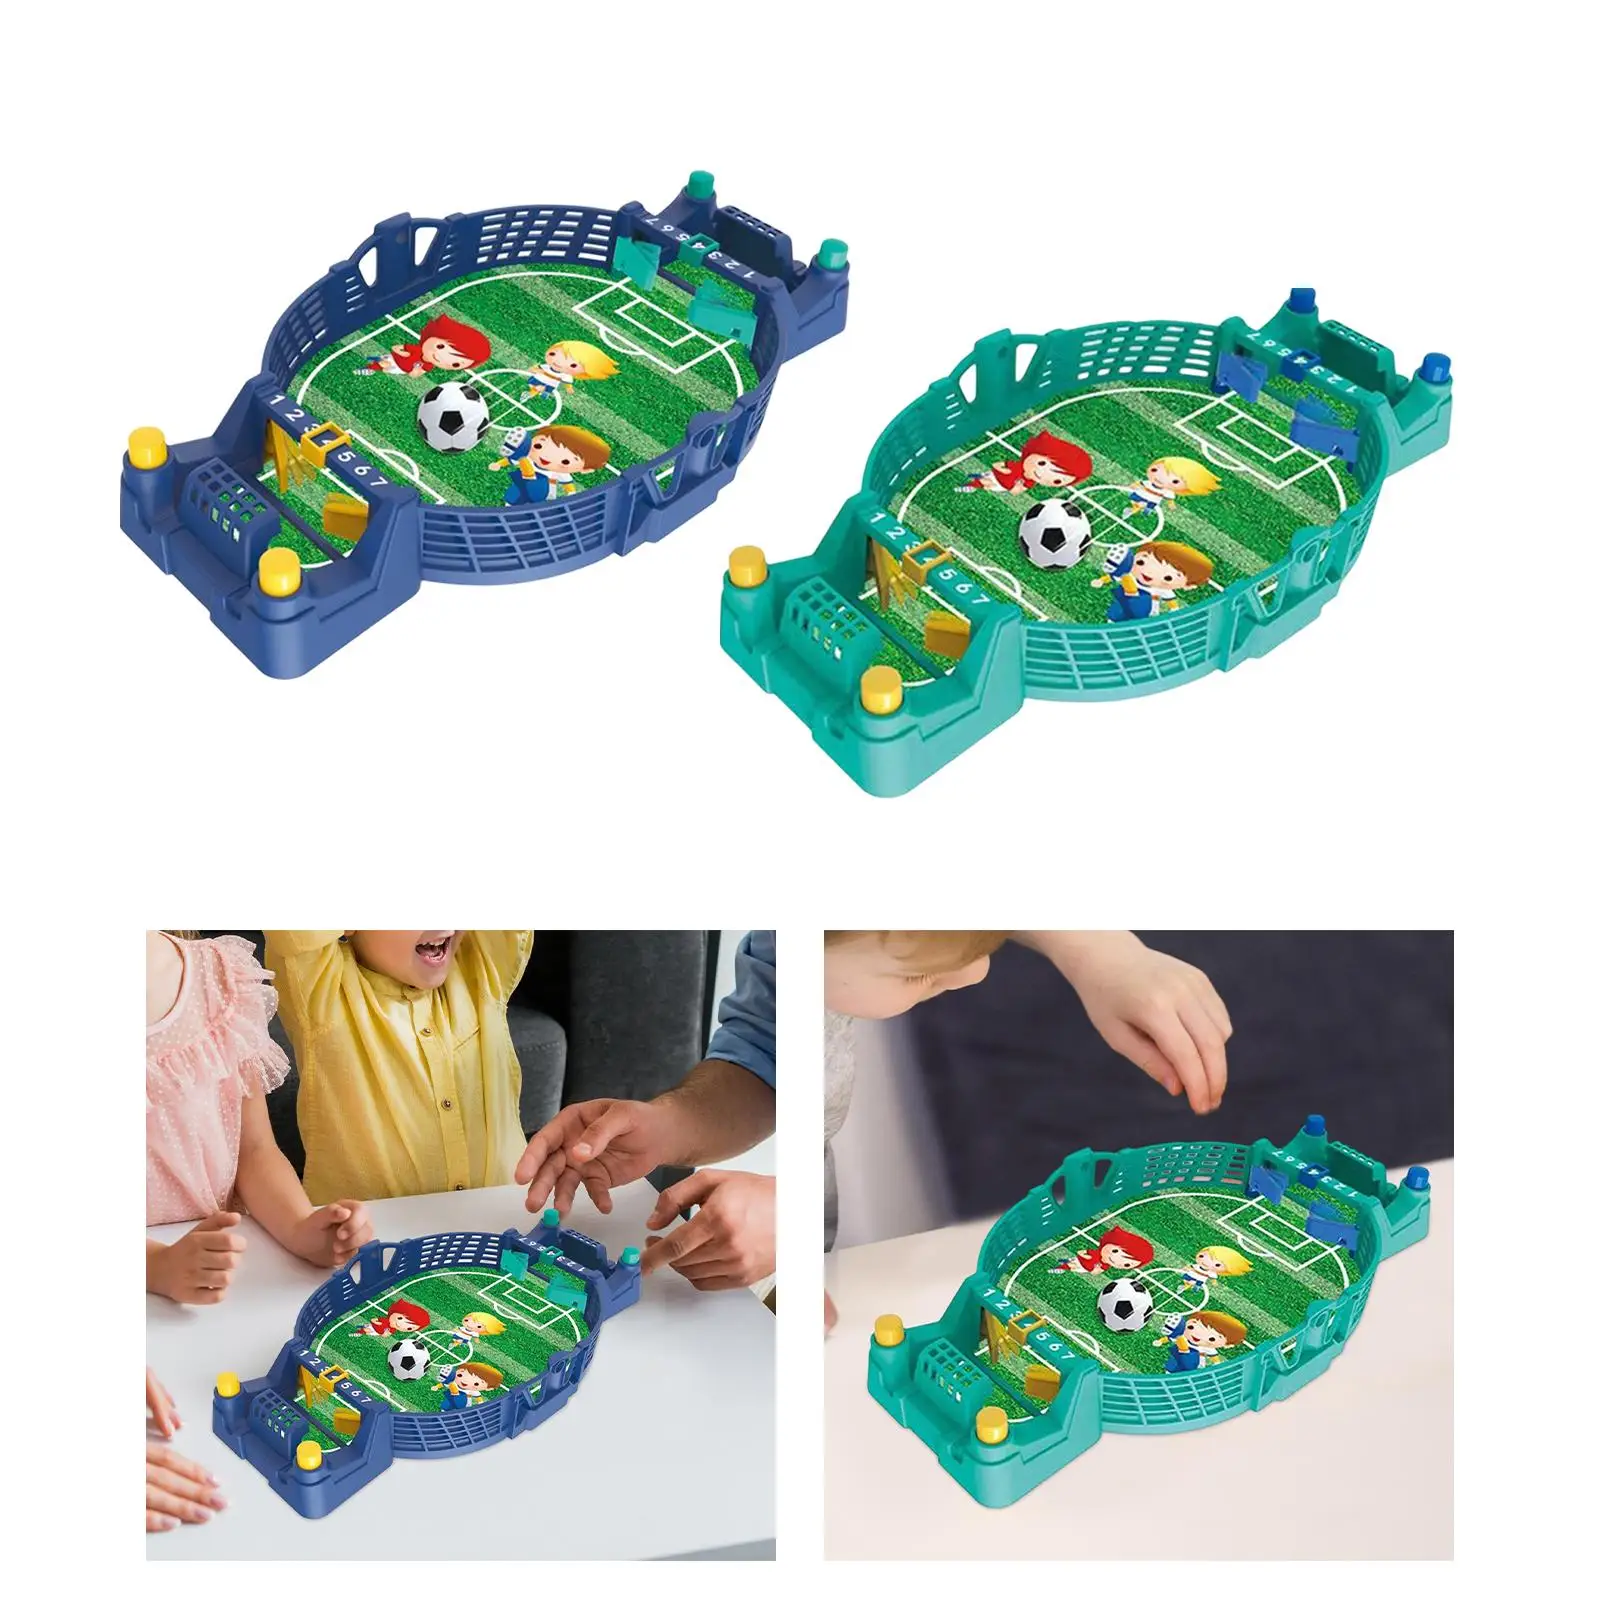 Table Soccer Interactive Toys Desktop Football Board Games Kit Tabletop Football Soccer Pinball Games for Girls Family Kids